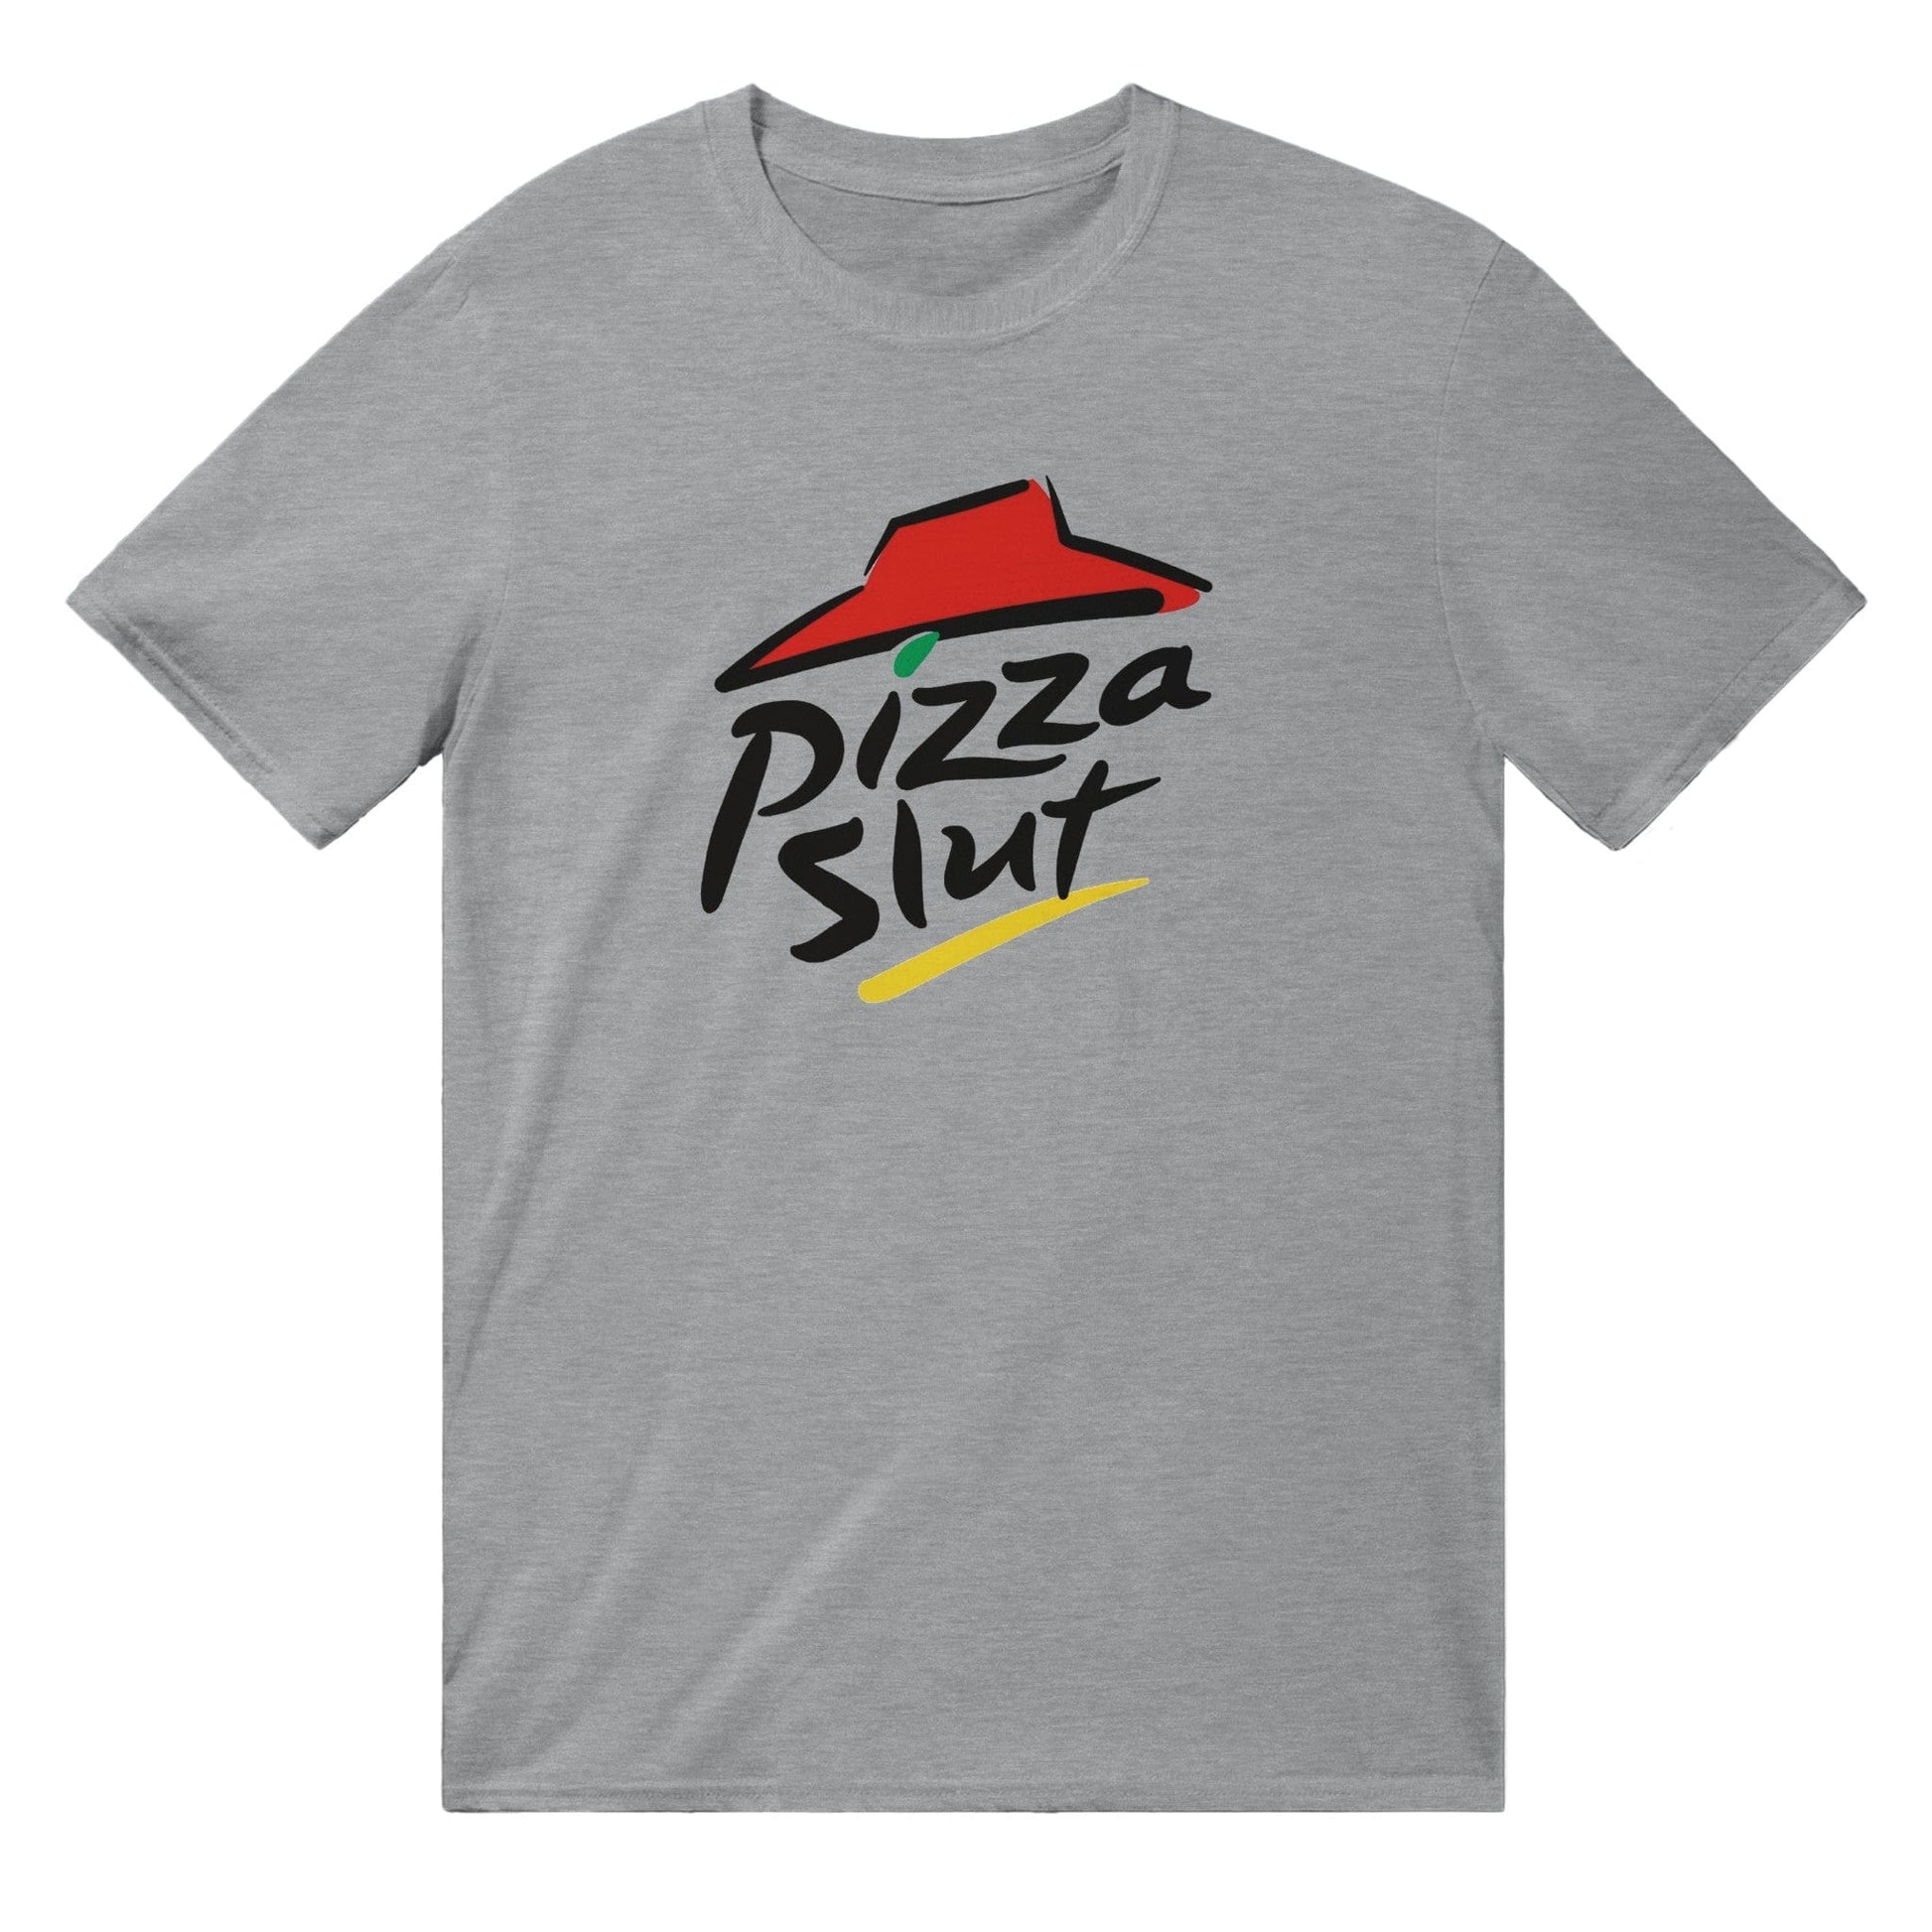 Pizza Slut T-shirt Australia Online Color Sports Grey / S